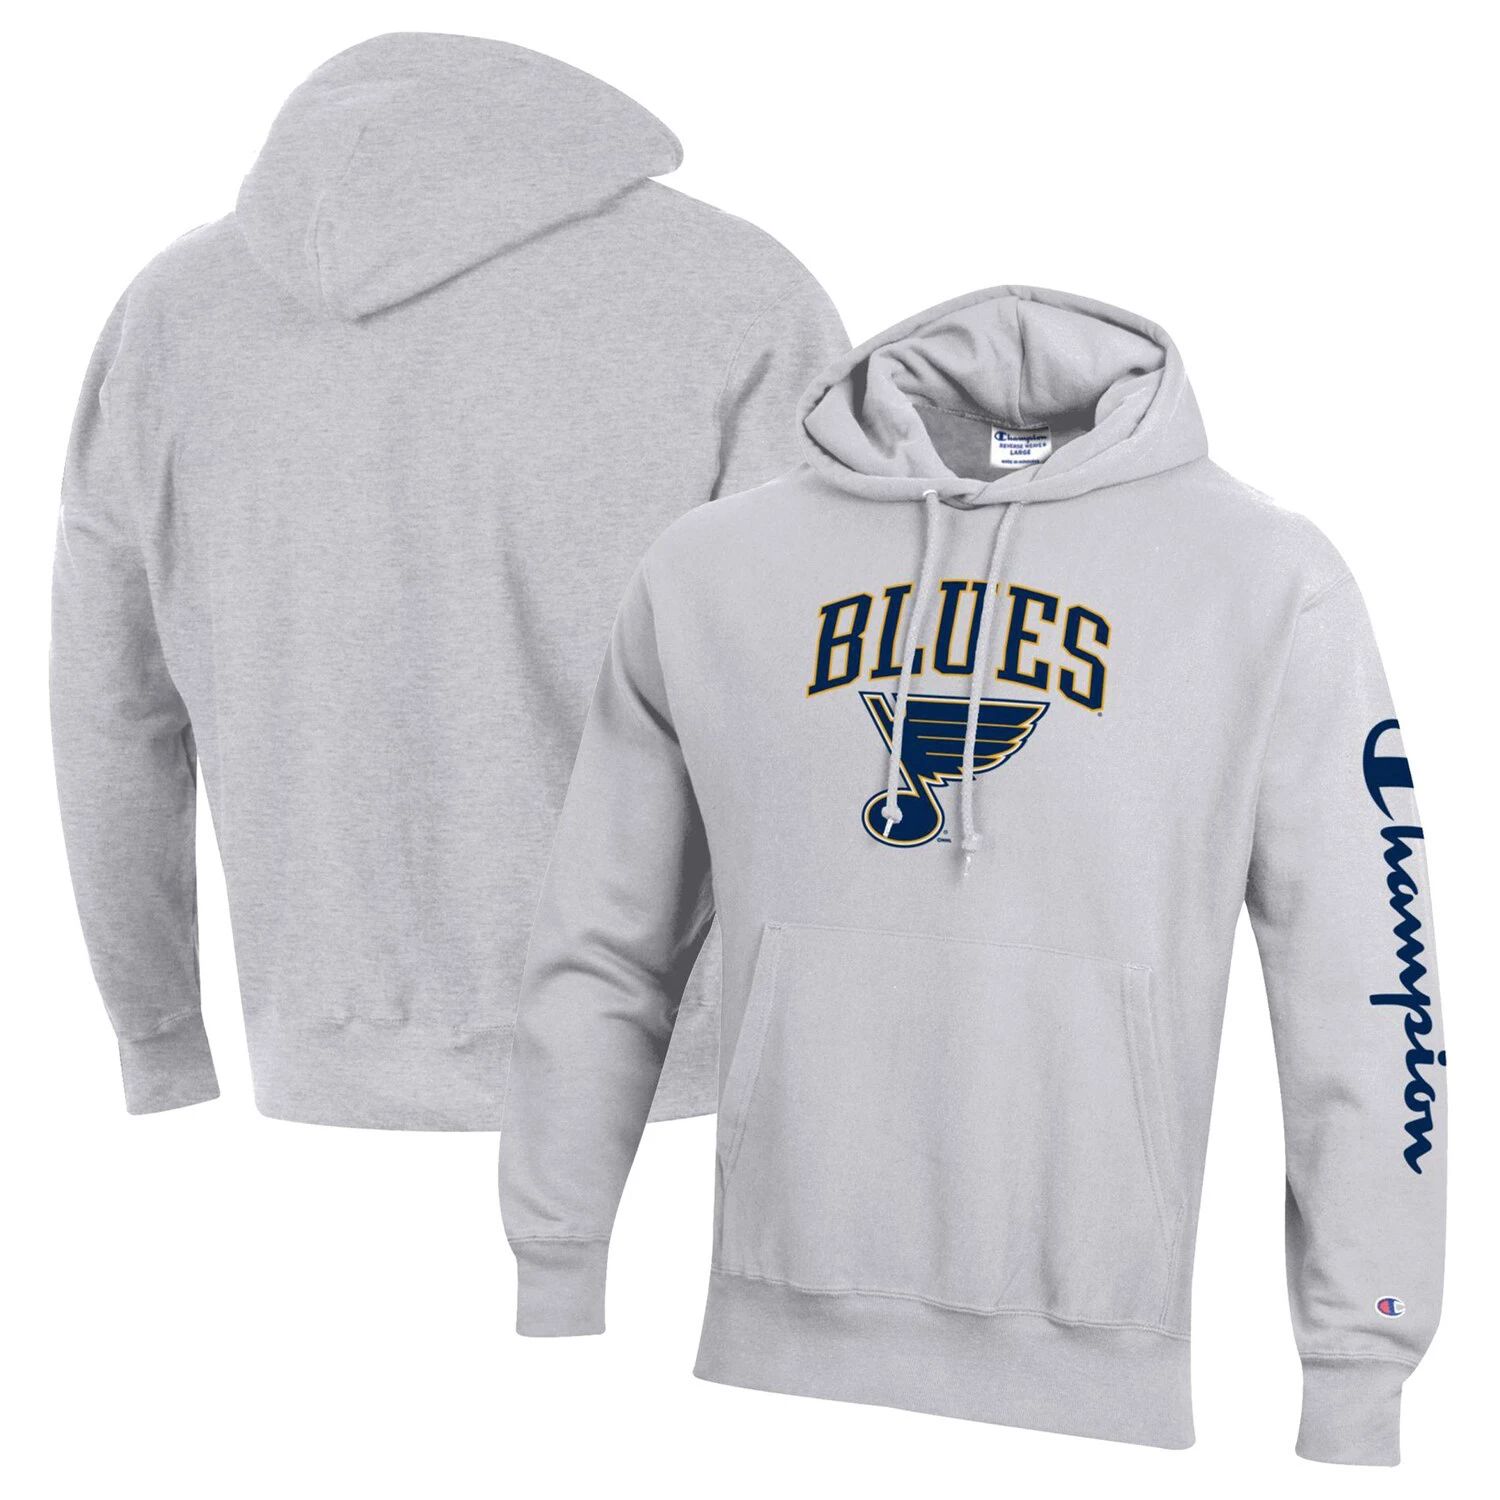 цена Мужской пуловер с капюшоном Champion Heather Grey St. Louis Blues обратного переплетения